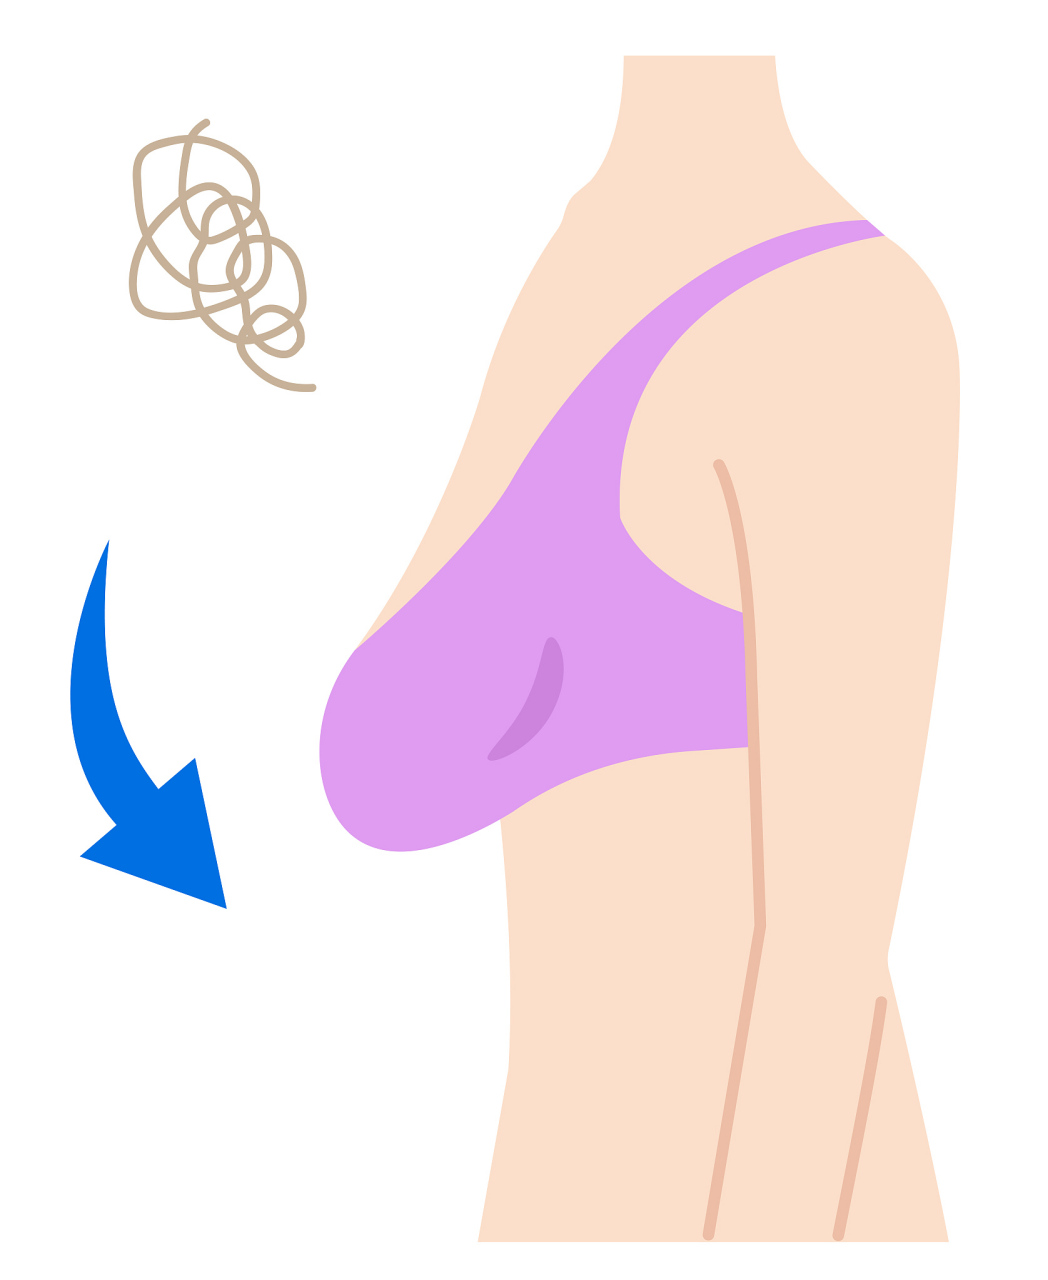 乳房干瘪一层皮图片